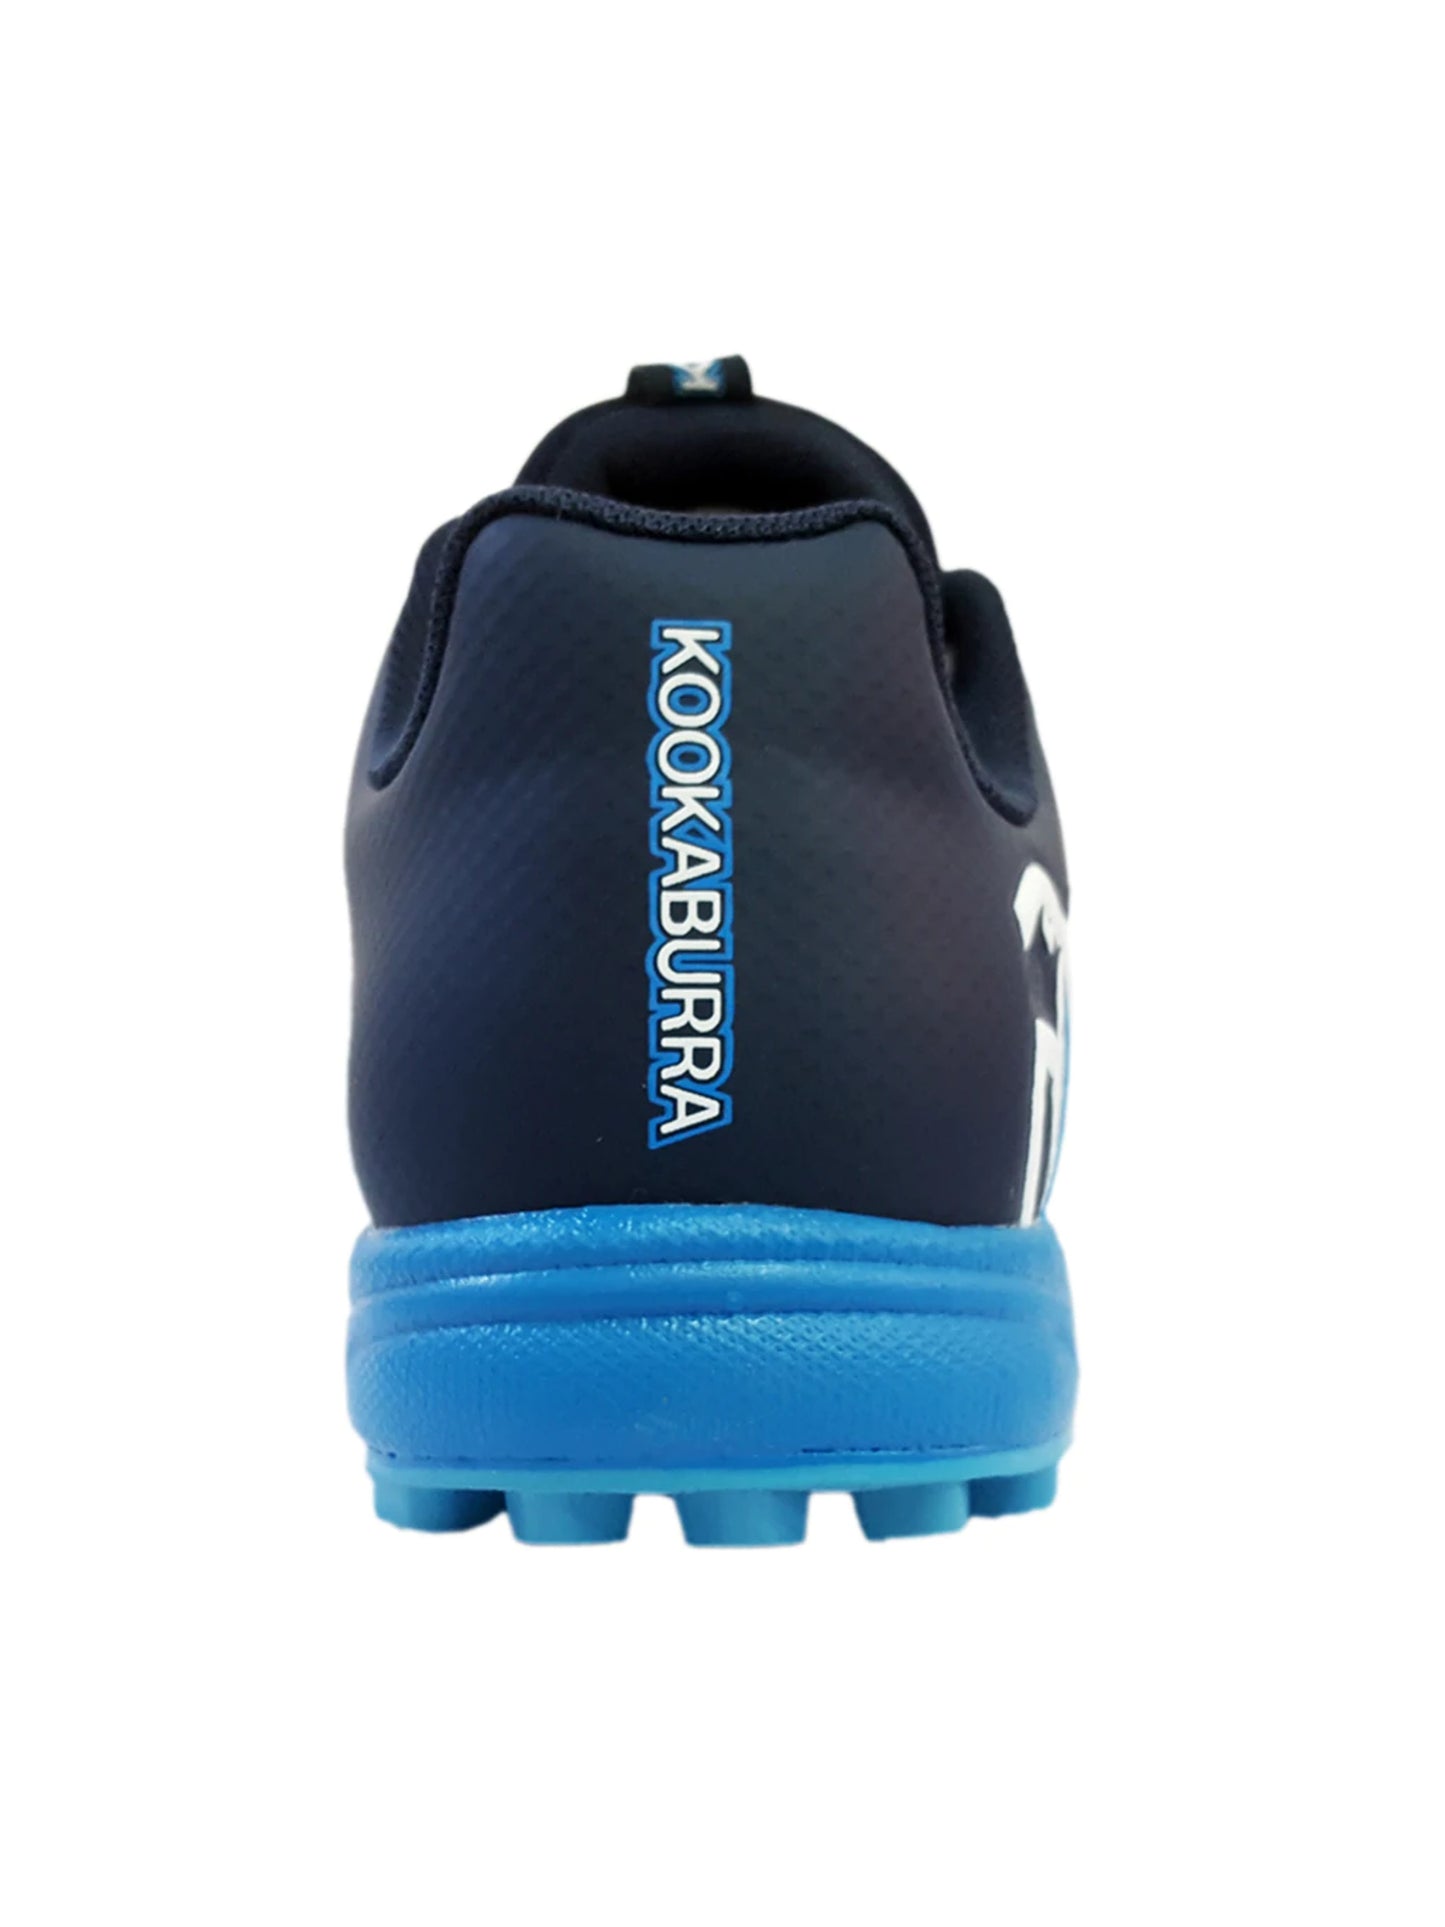 Kookaburra Pro 1500 Rubber Spike Shoes